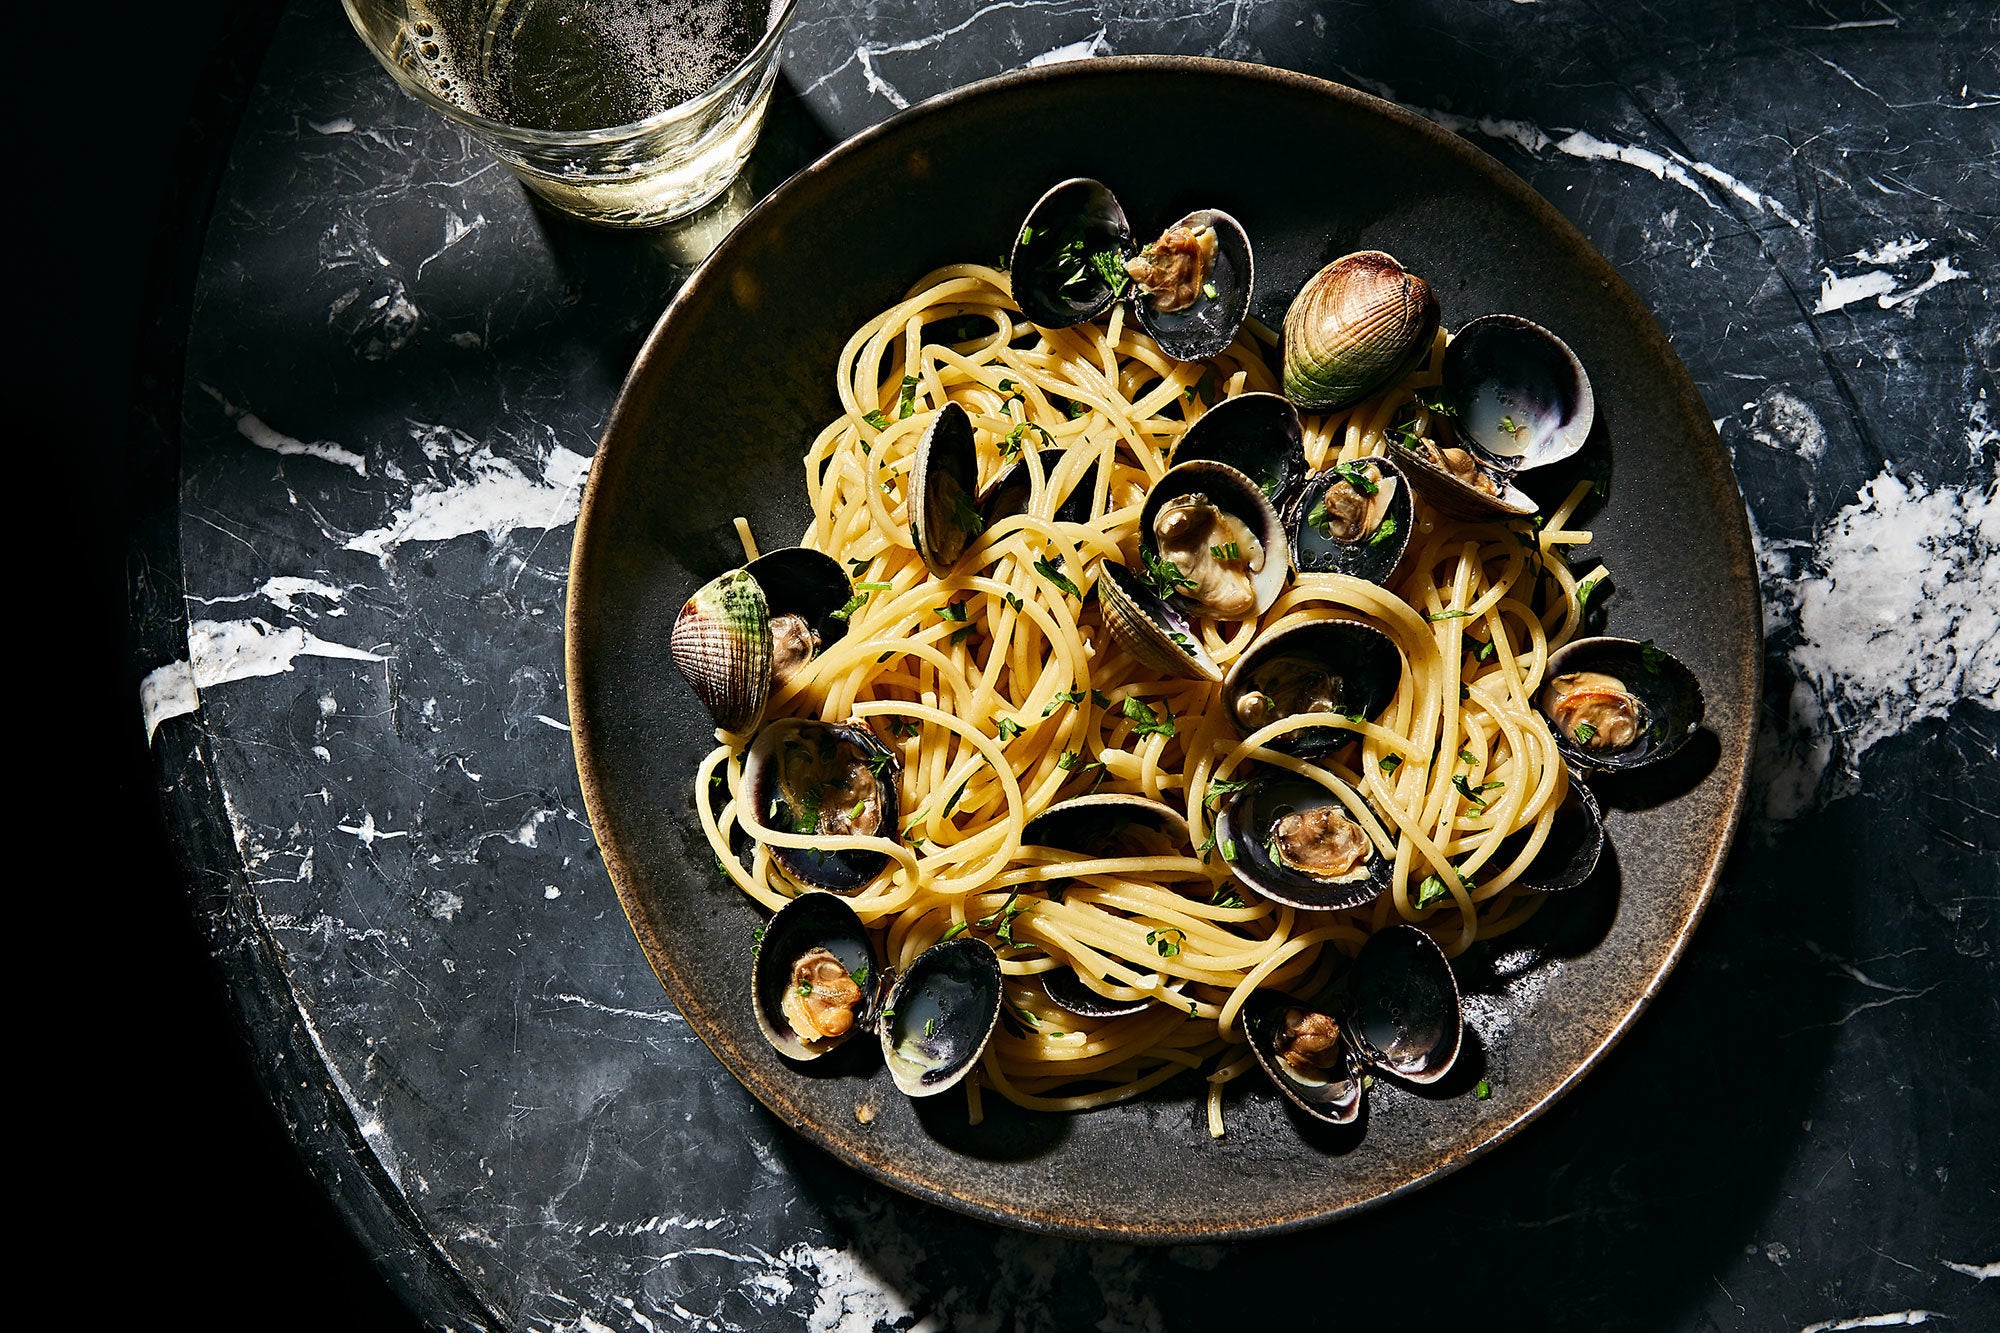 Article-Pasta-Spaghetti-with-Clams-Italian-Recipe